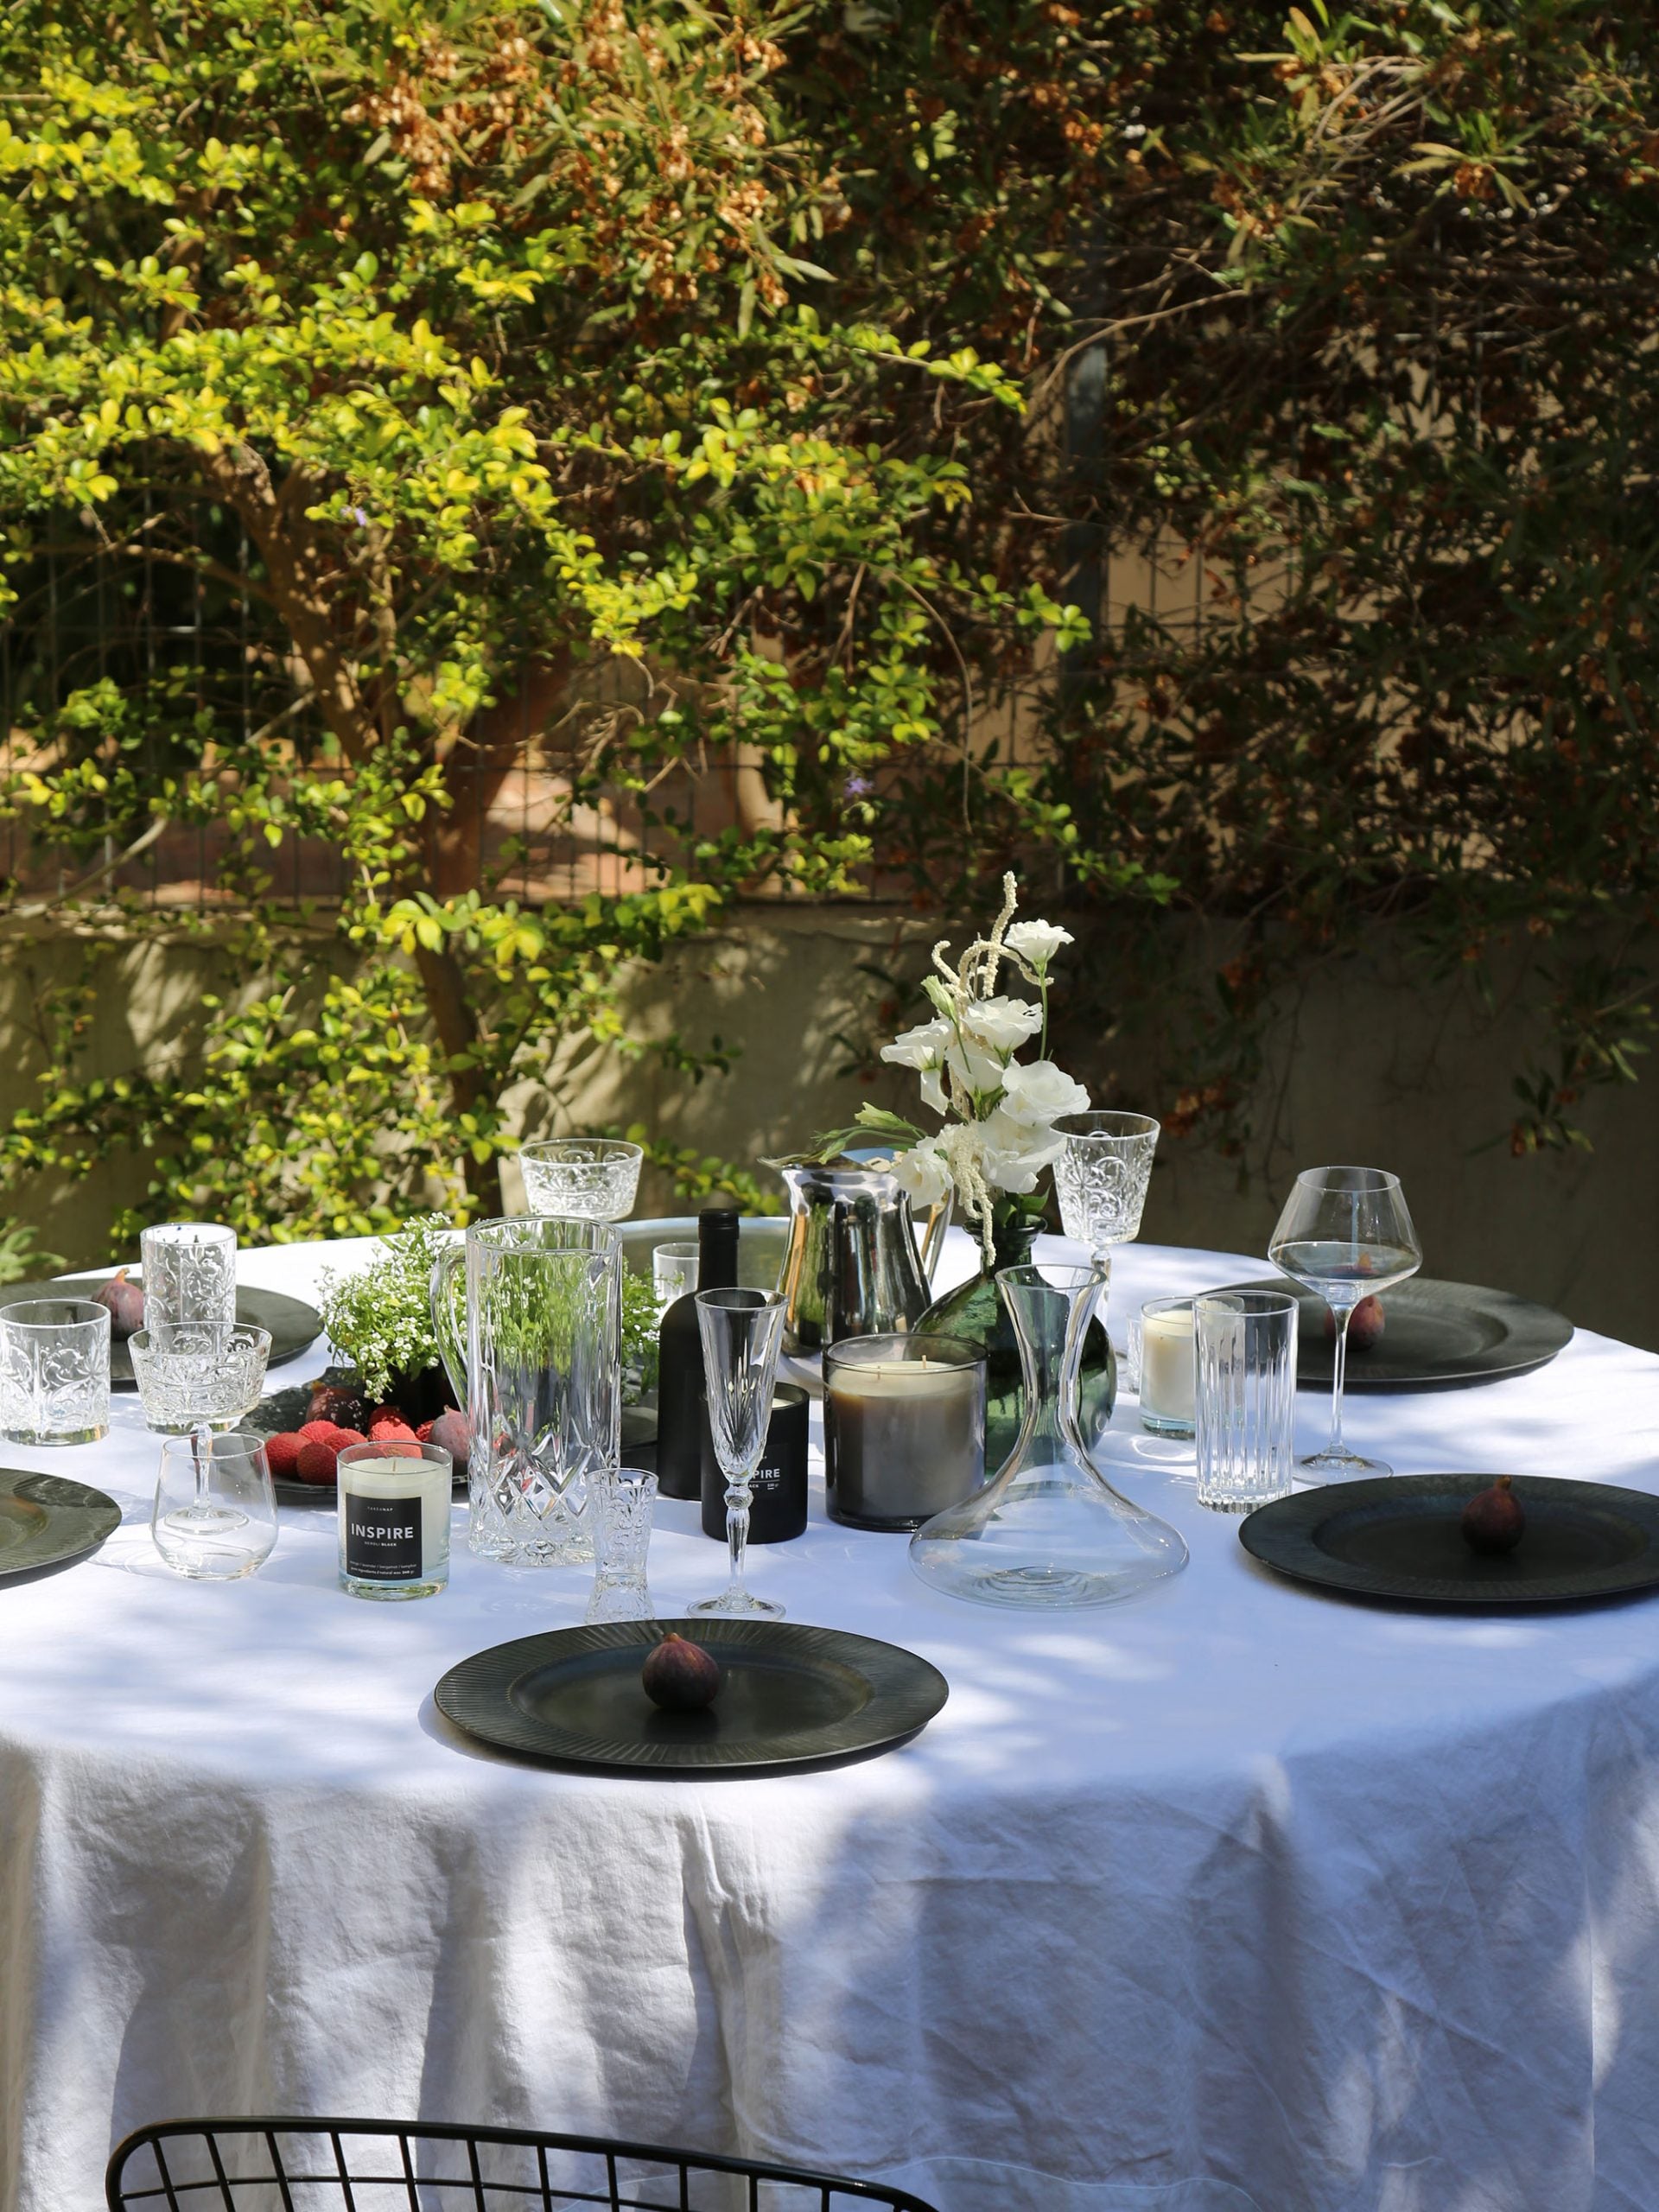 שולחן ערוך בחצר עם מפה לבנה שעליה צלחות, כוסות שמפנייה, מים ויין ונרות ריחניים